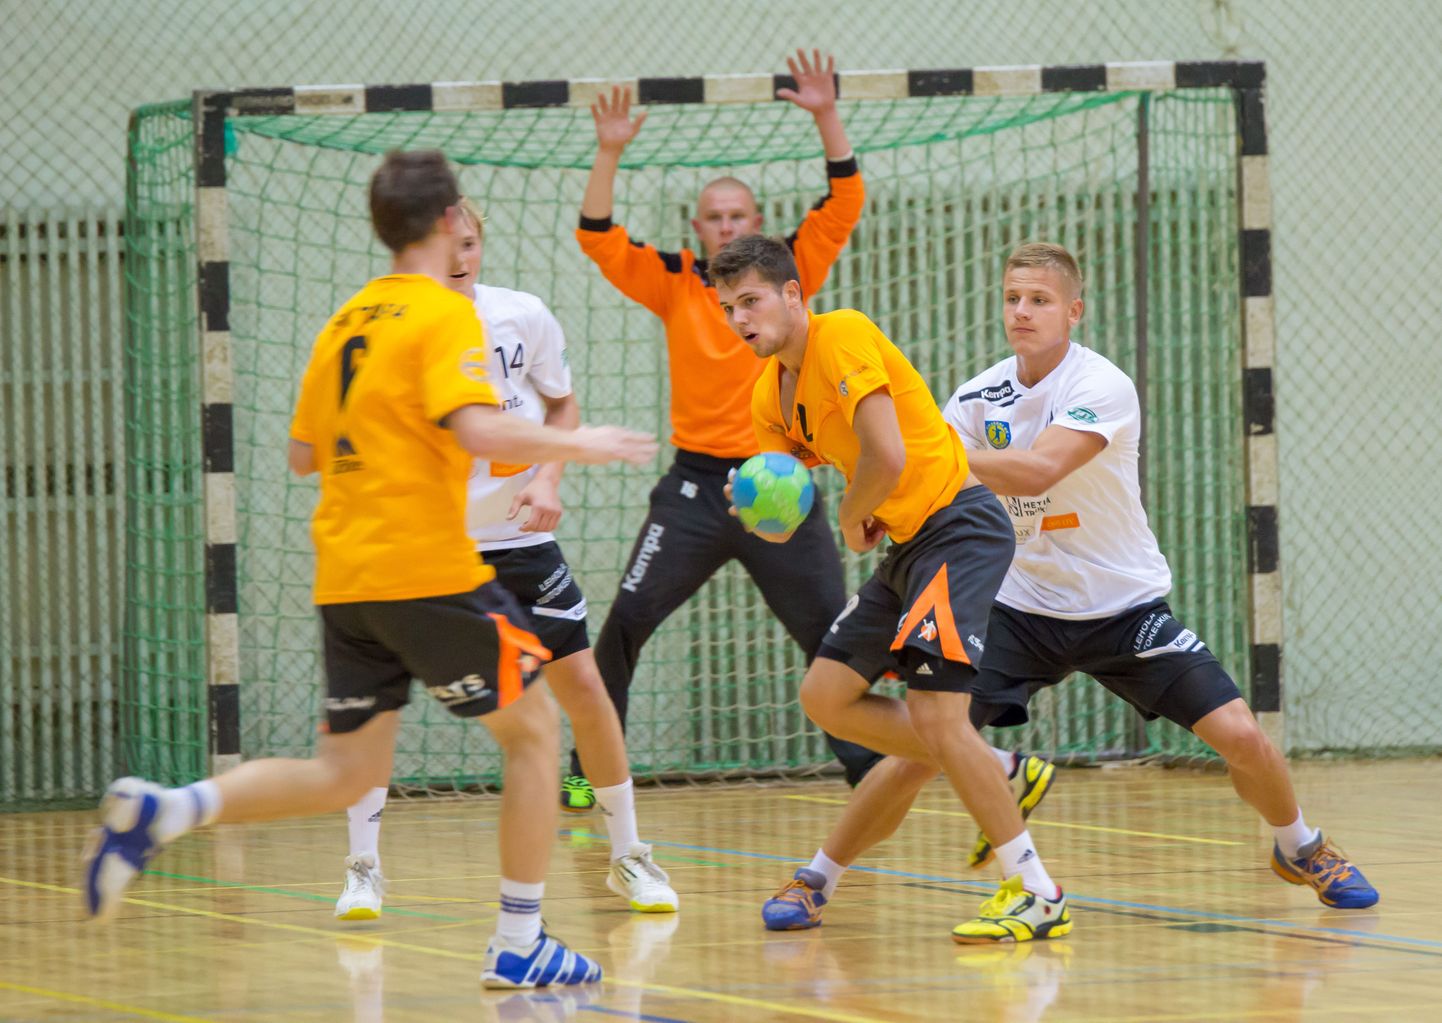 Täna kell 19 kohtuvad Tapal Eesti käsipalli meistrivõistlustel Viljandi HC ja SK Tapa.